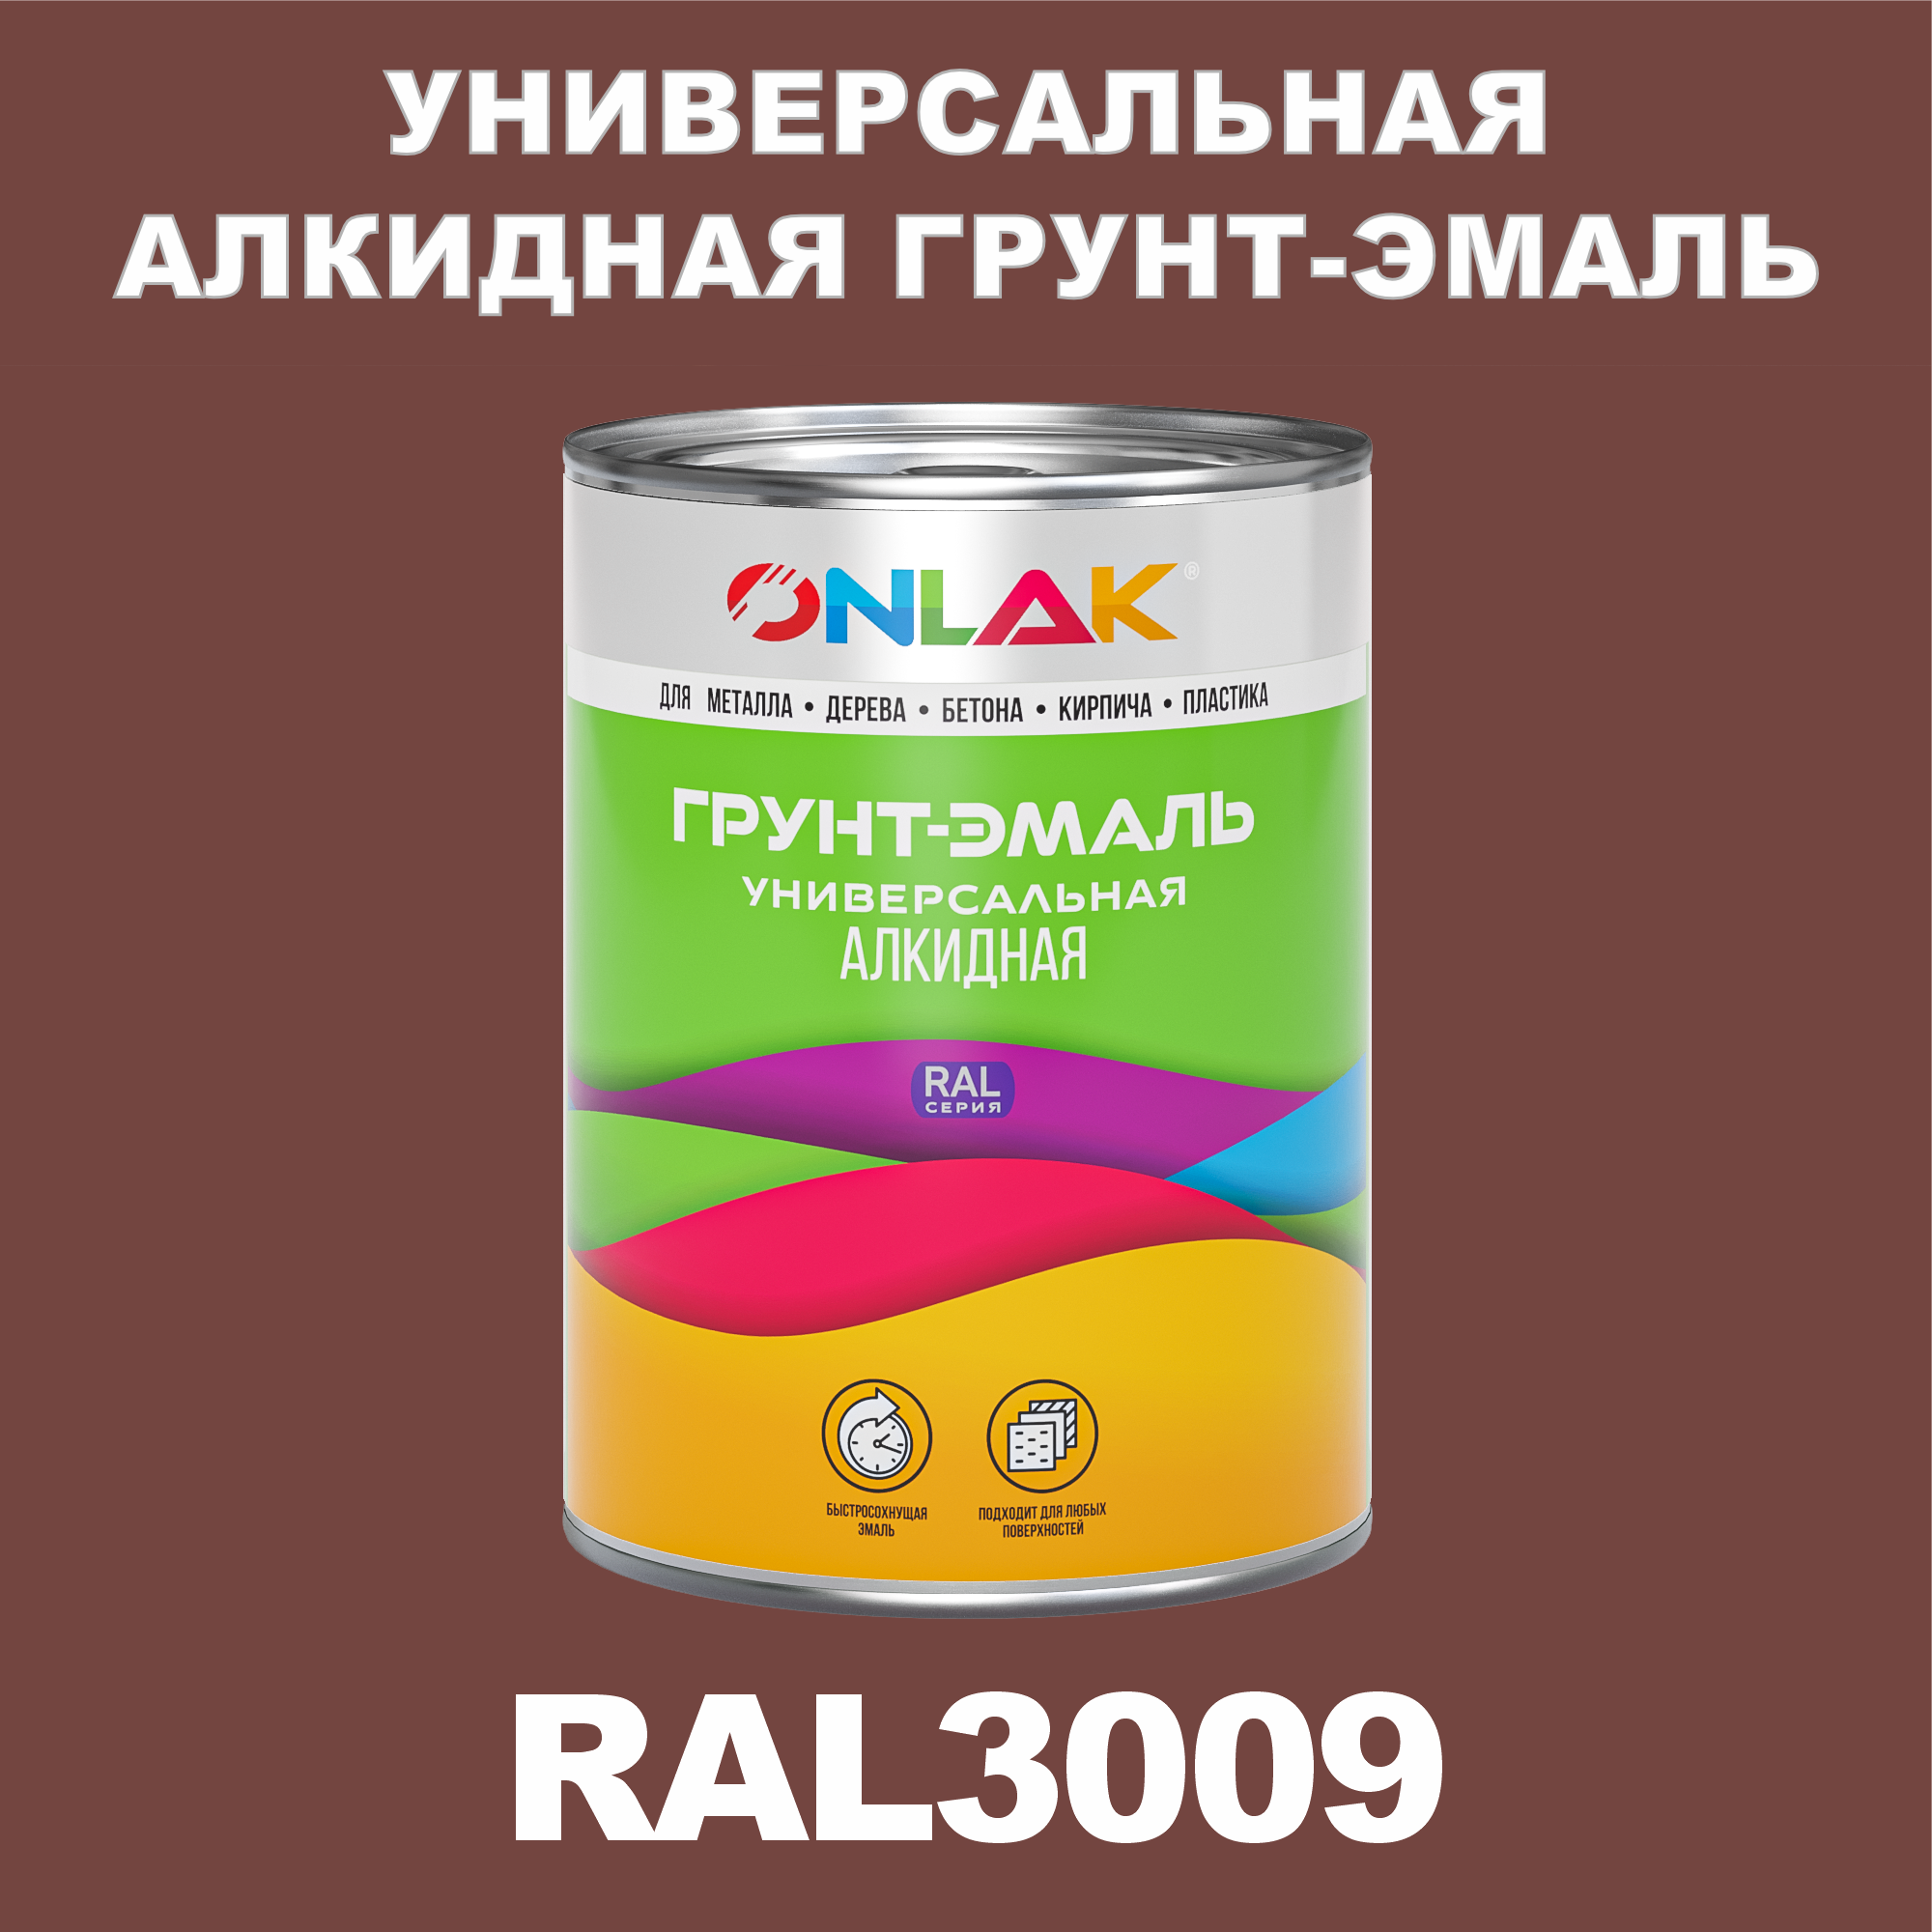 Грунт-эмаль ONLAK 1К RAL3009 антикоррозионная алкидная по металлу по ржавчине 1 кг грунт аэрозольный антикоррозийный inral ground красный ral3009 400мл